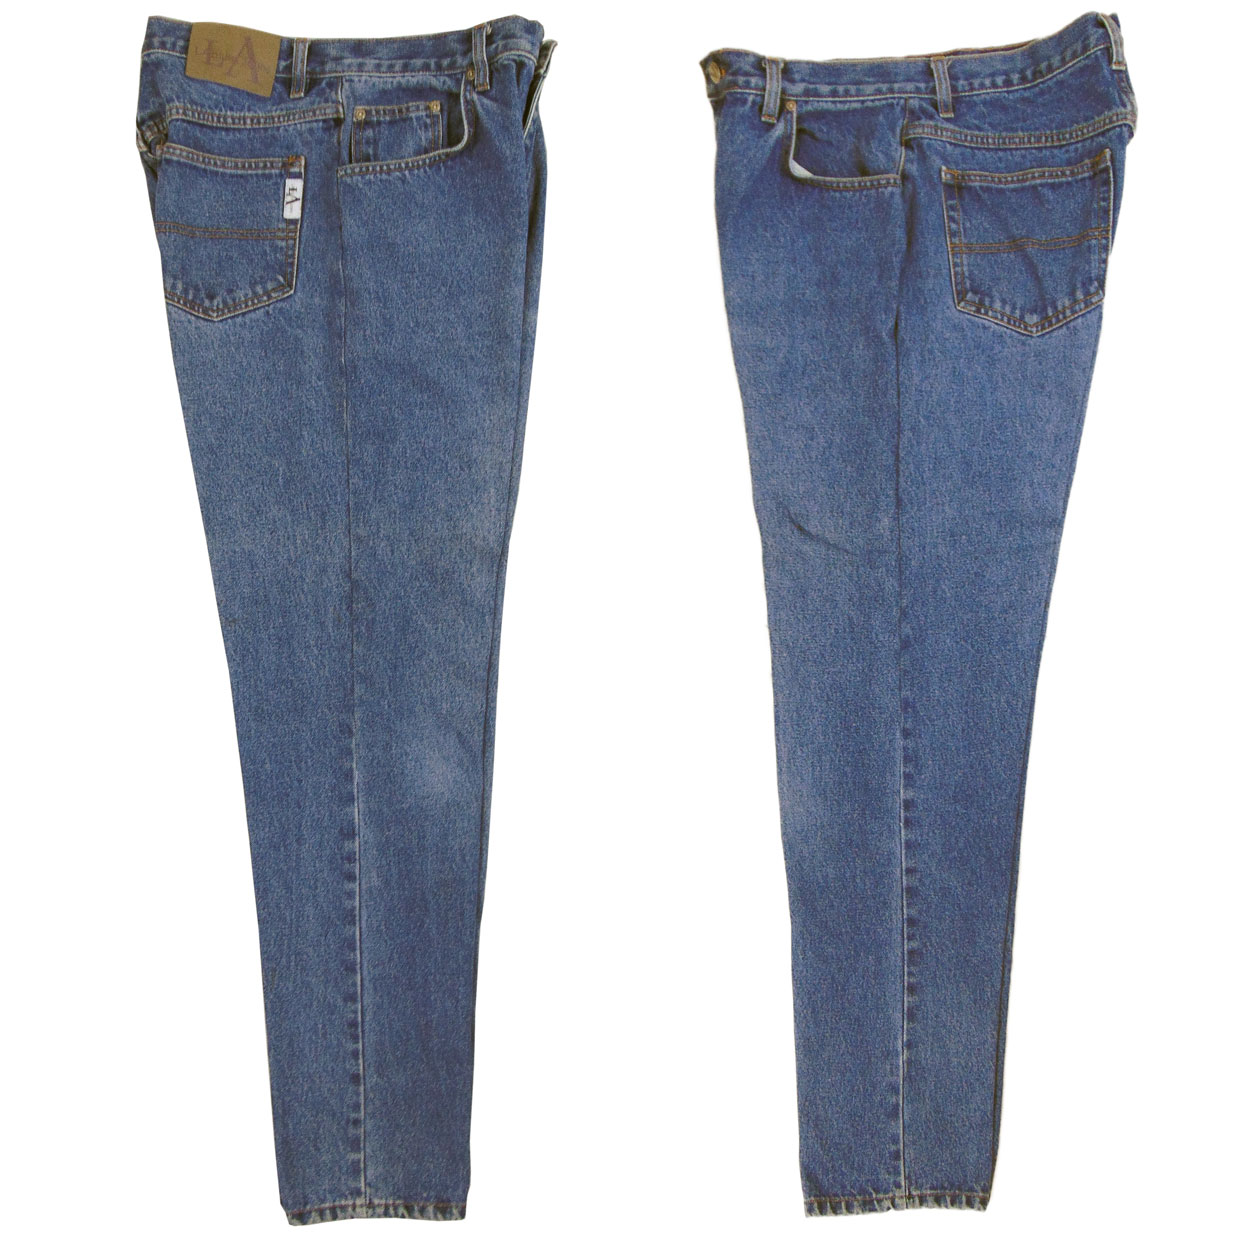 Bluenotes Black Slim Fit Jeans W28/L30